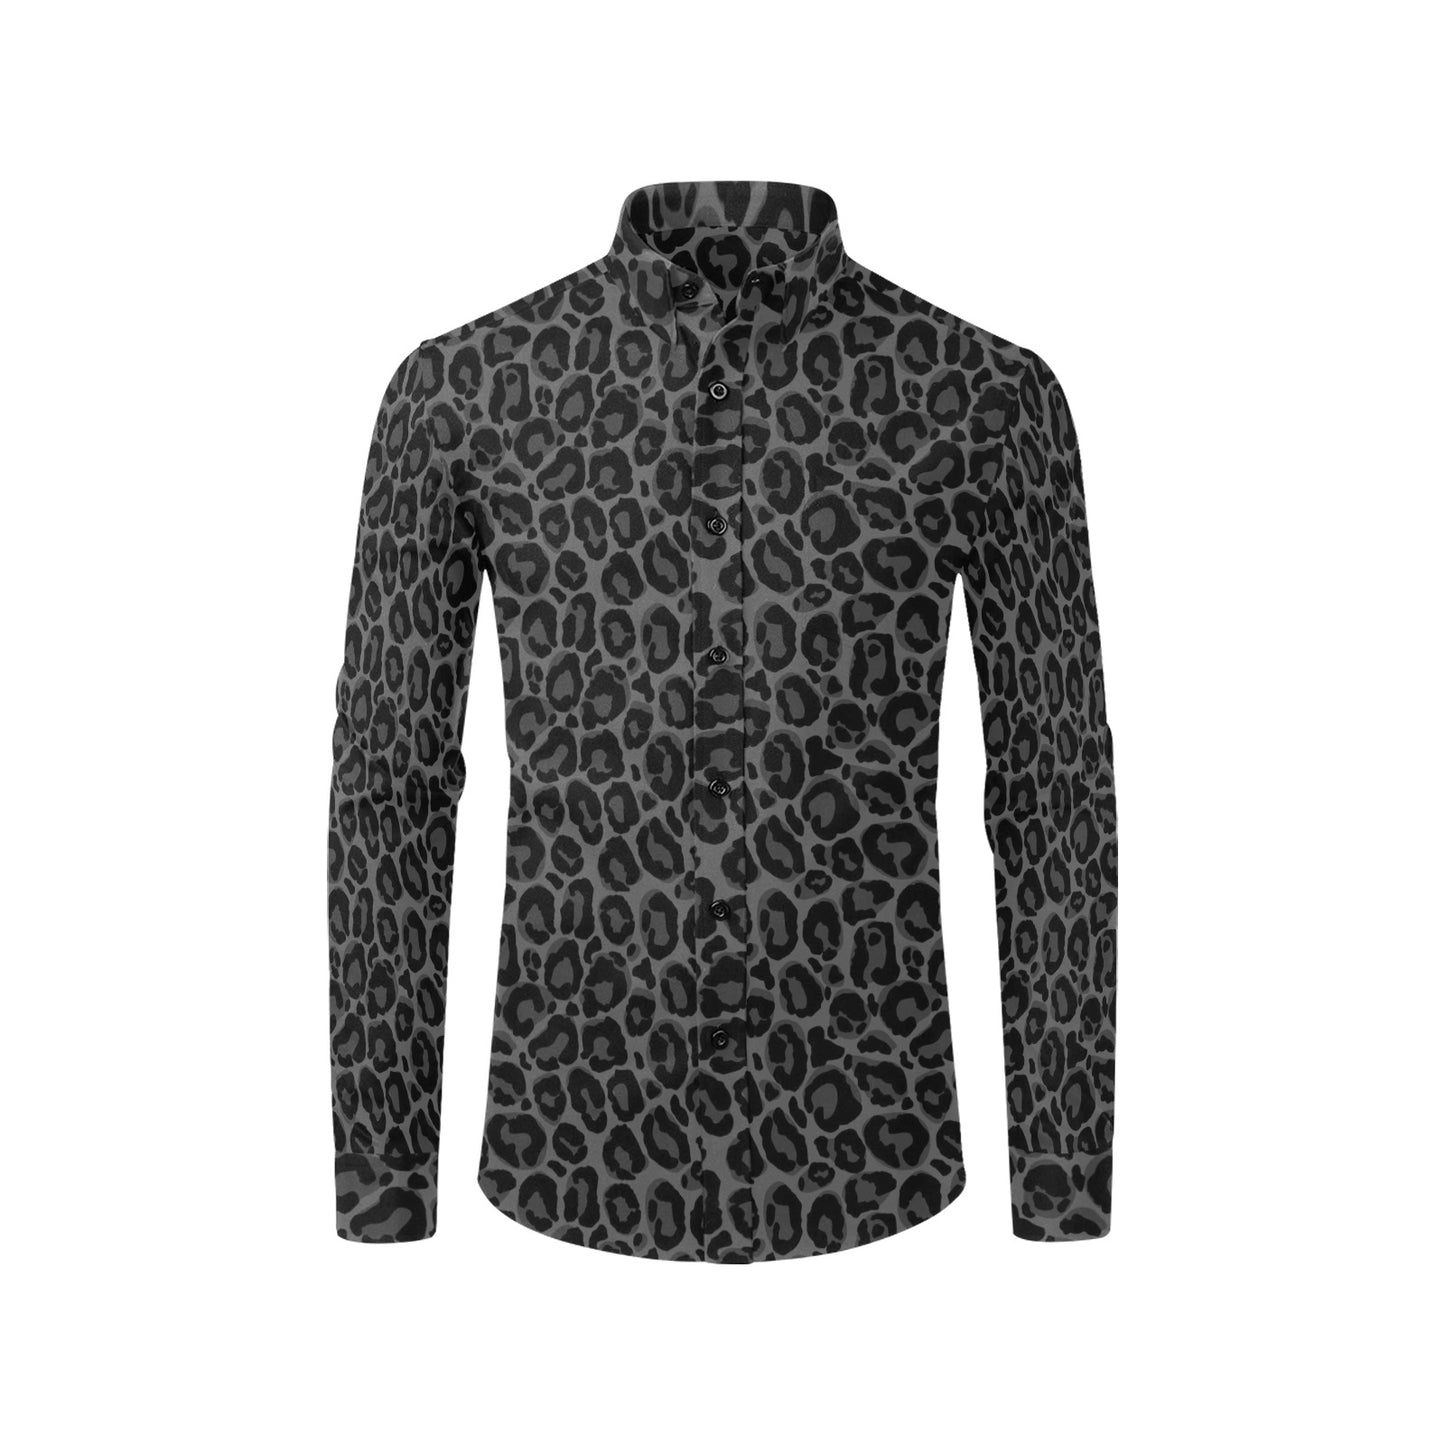 Black Leopard Men Button Up Shirt, Long Sleeve cheetah Animals Print Grey Buttoned Collar Dress Shirt with Chest Pocket